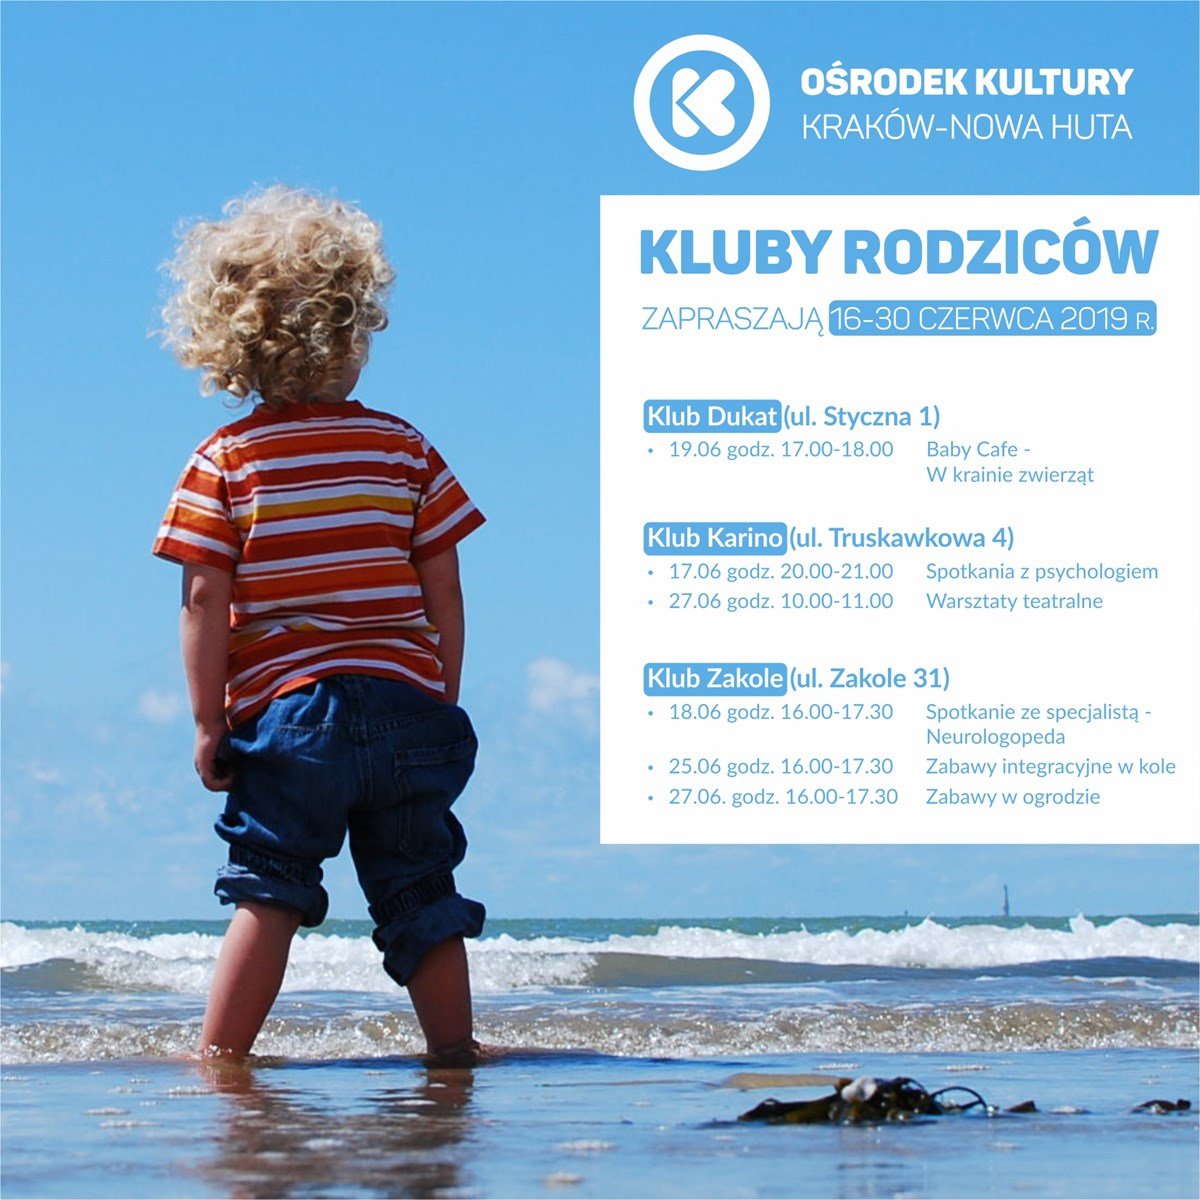 Klub Rodziców w Ośrodku Kultury Kraków-Nowa Huta – czerwiec 2019